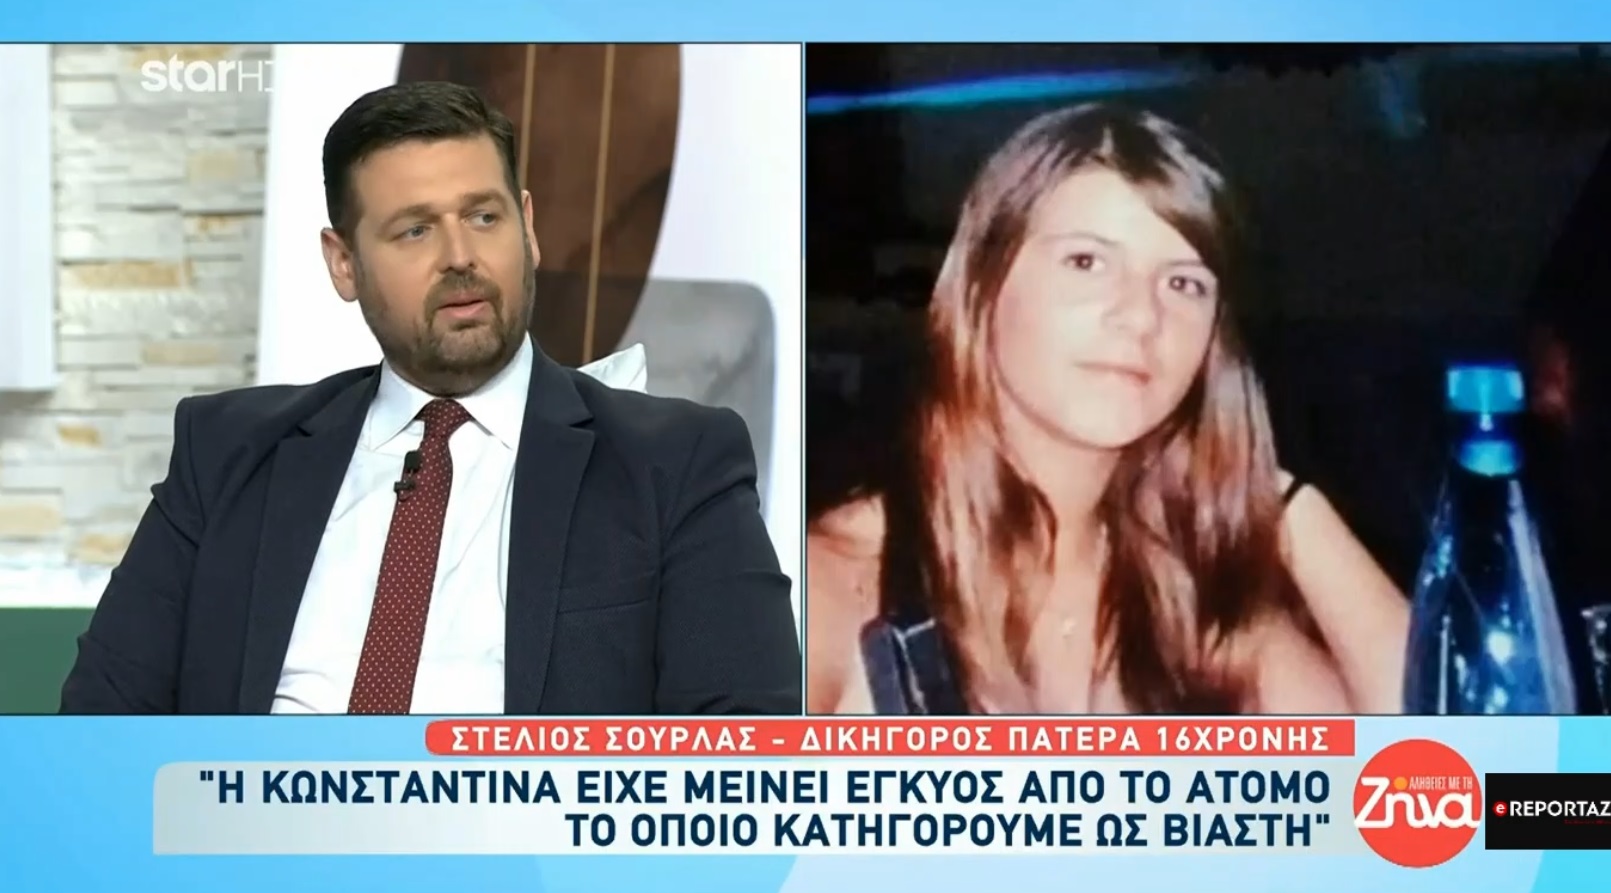 Κωνσταντίνα Αναγνώστη: Ραγδαίες εξελίξεις μετά τις νέες μηνύσεις που αποκάλυψε χθες το ereportaz.gr (βίντεο)